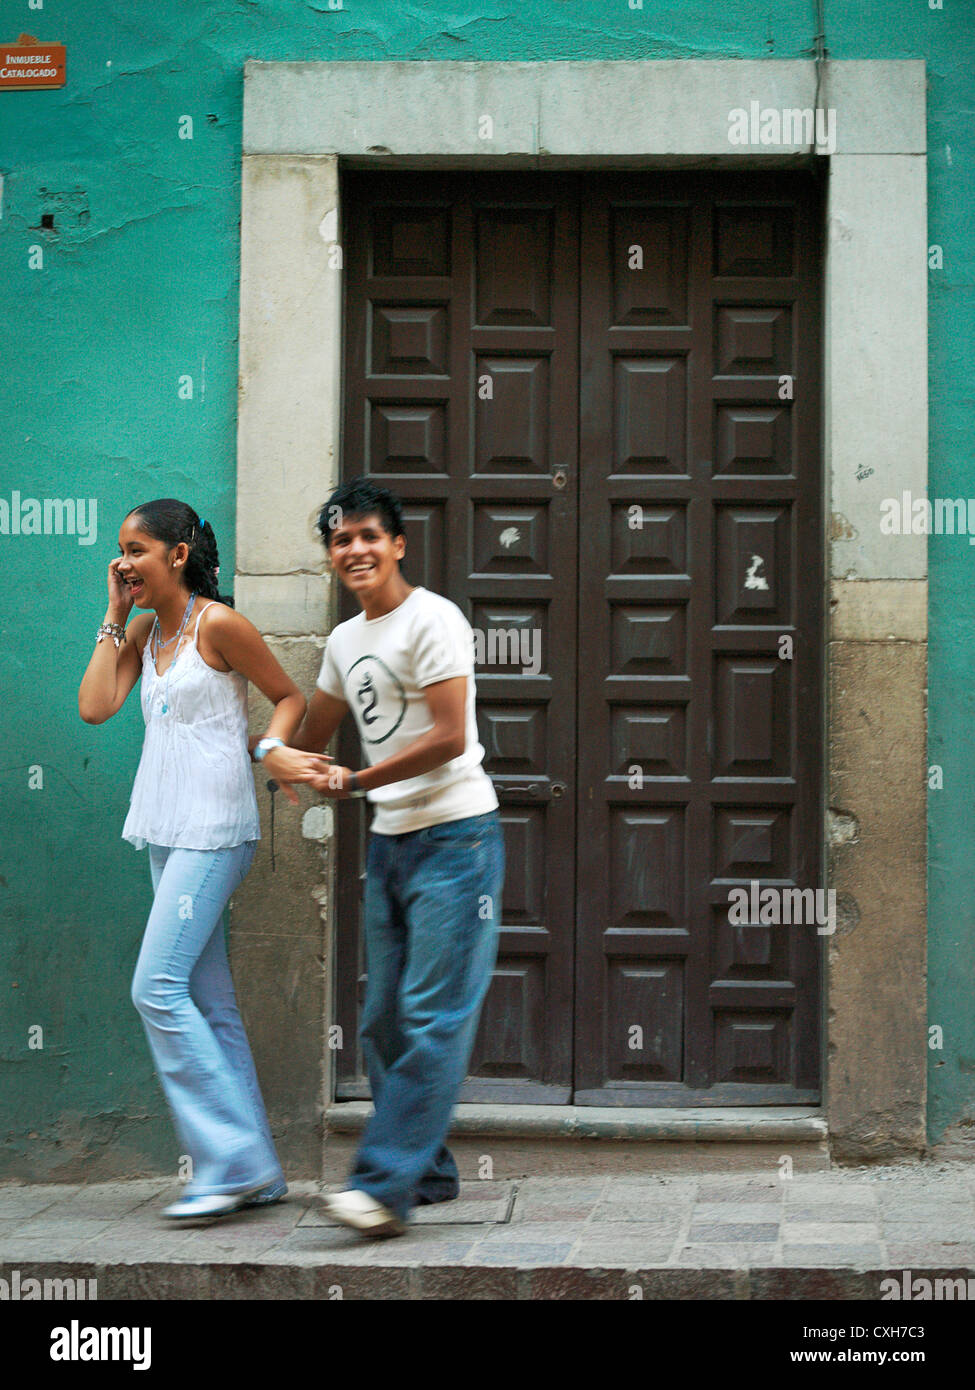 Edgar Israel und Ixbel Ixta, ein junger, lächelnd, späten Teenager Paar, in einer Straße. Ixbel ist auf ihrem Handy chatten. Modell rele Stockfoto